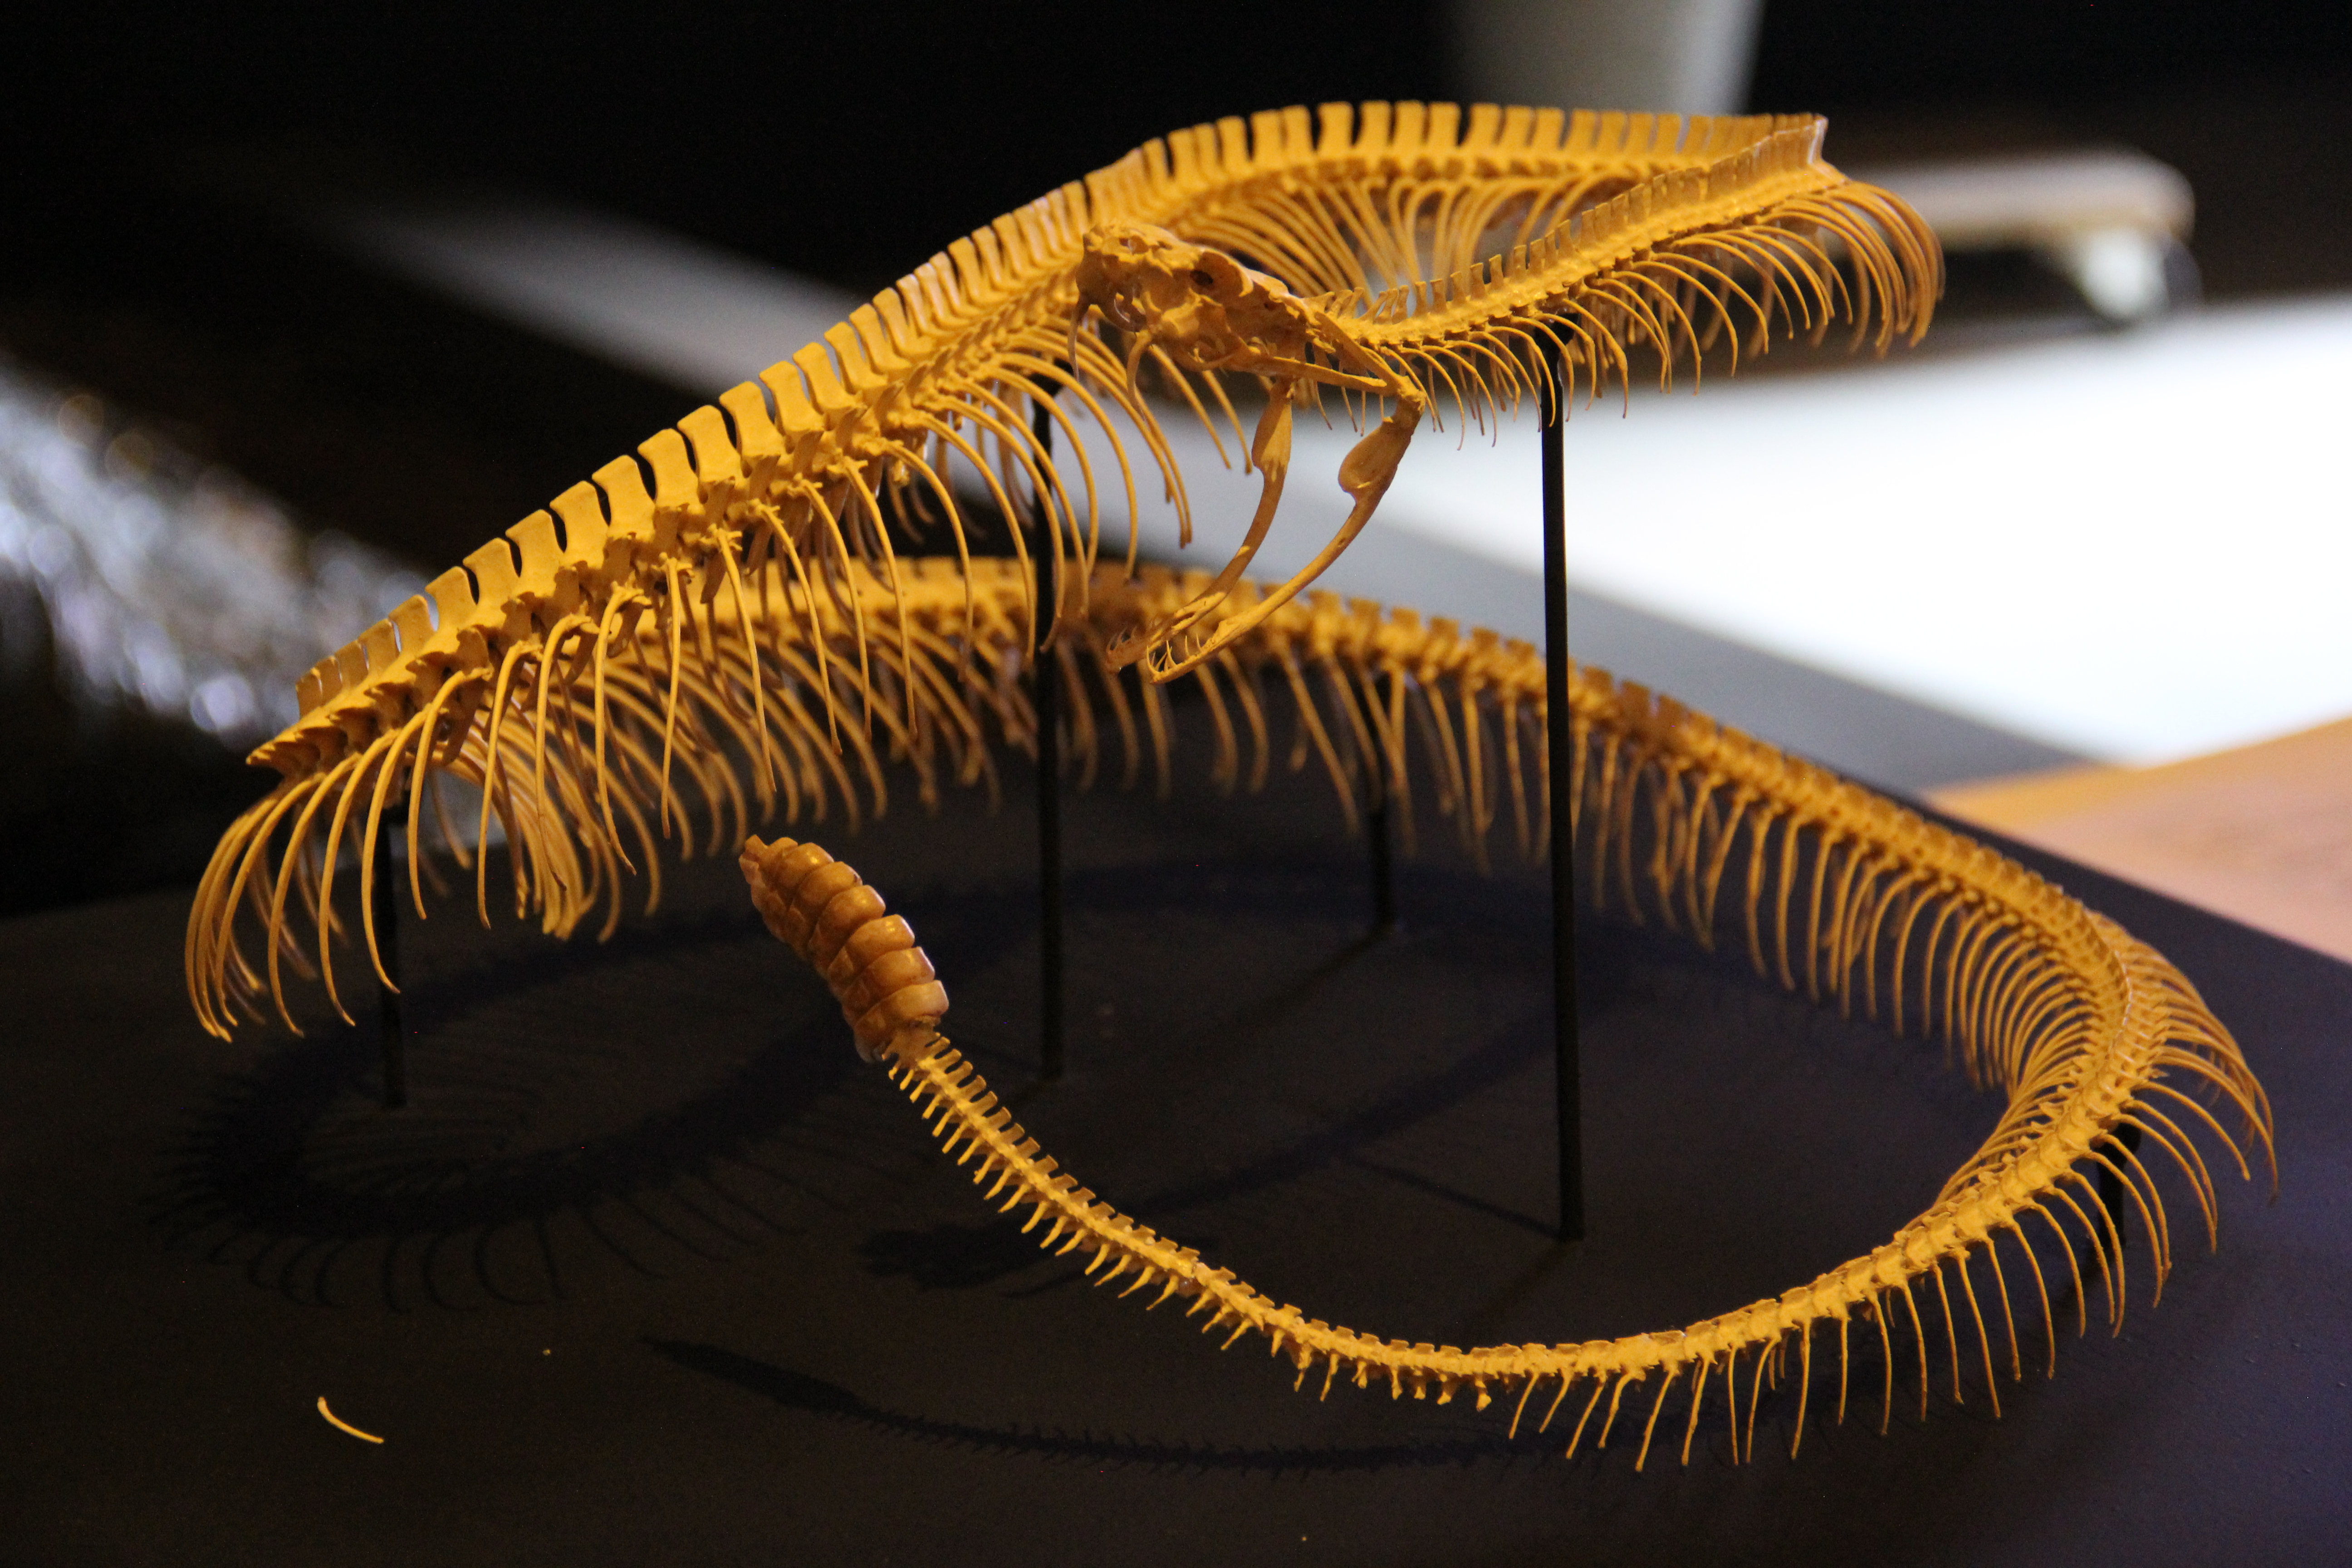 Reptiles del pasado y del presente” en el Museo Laberinto